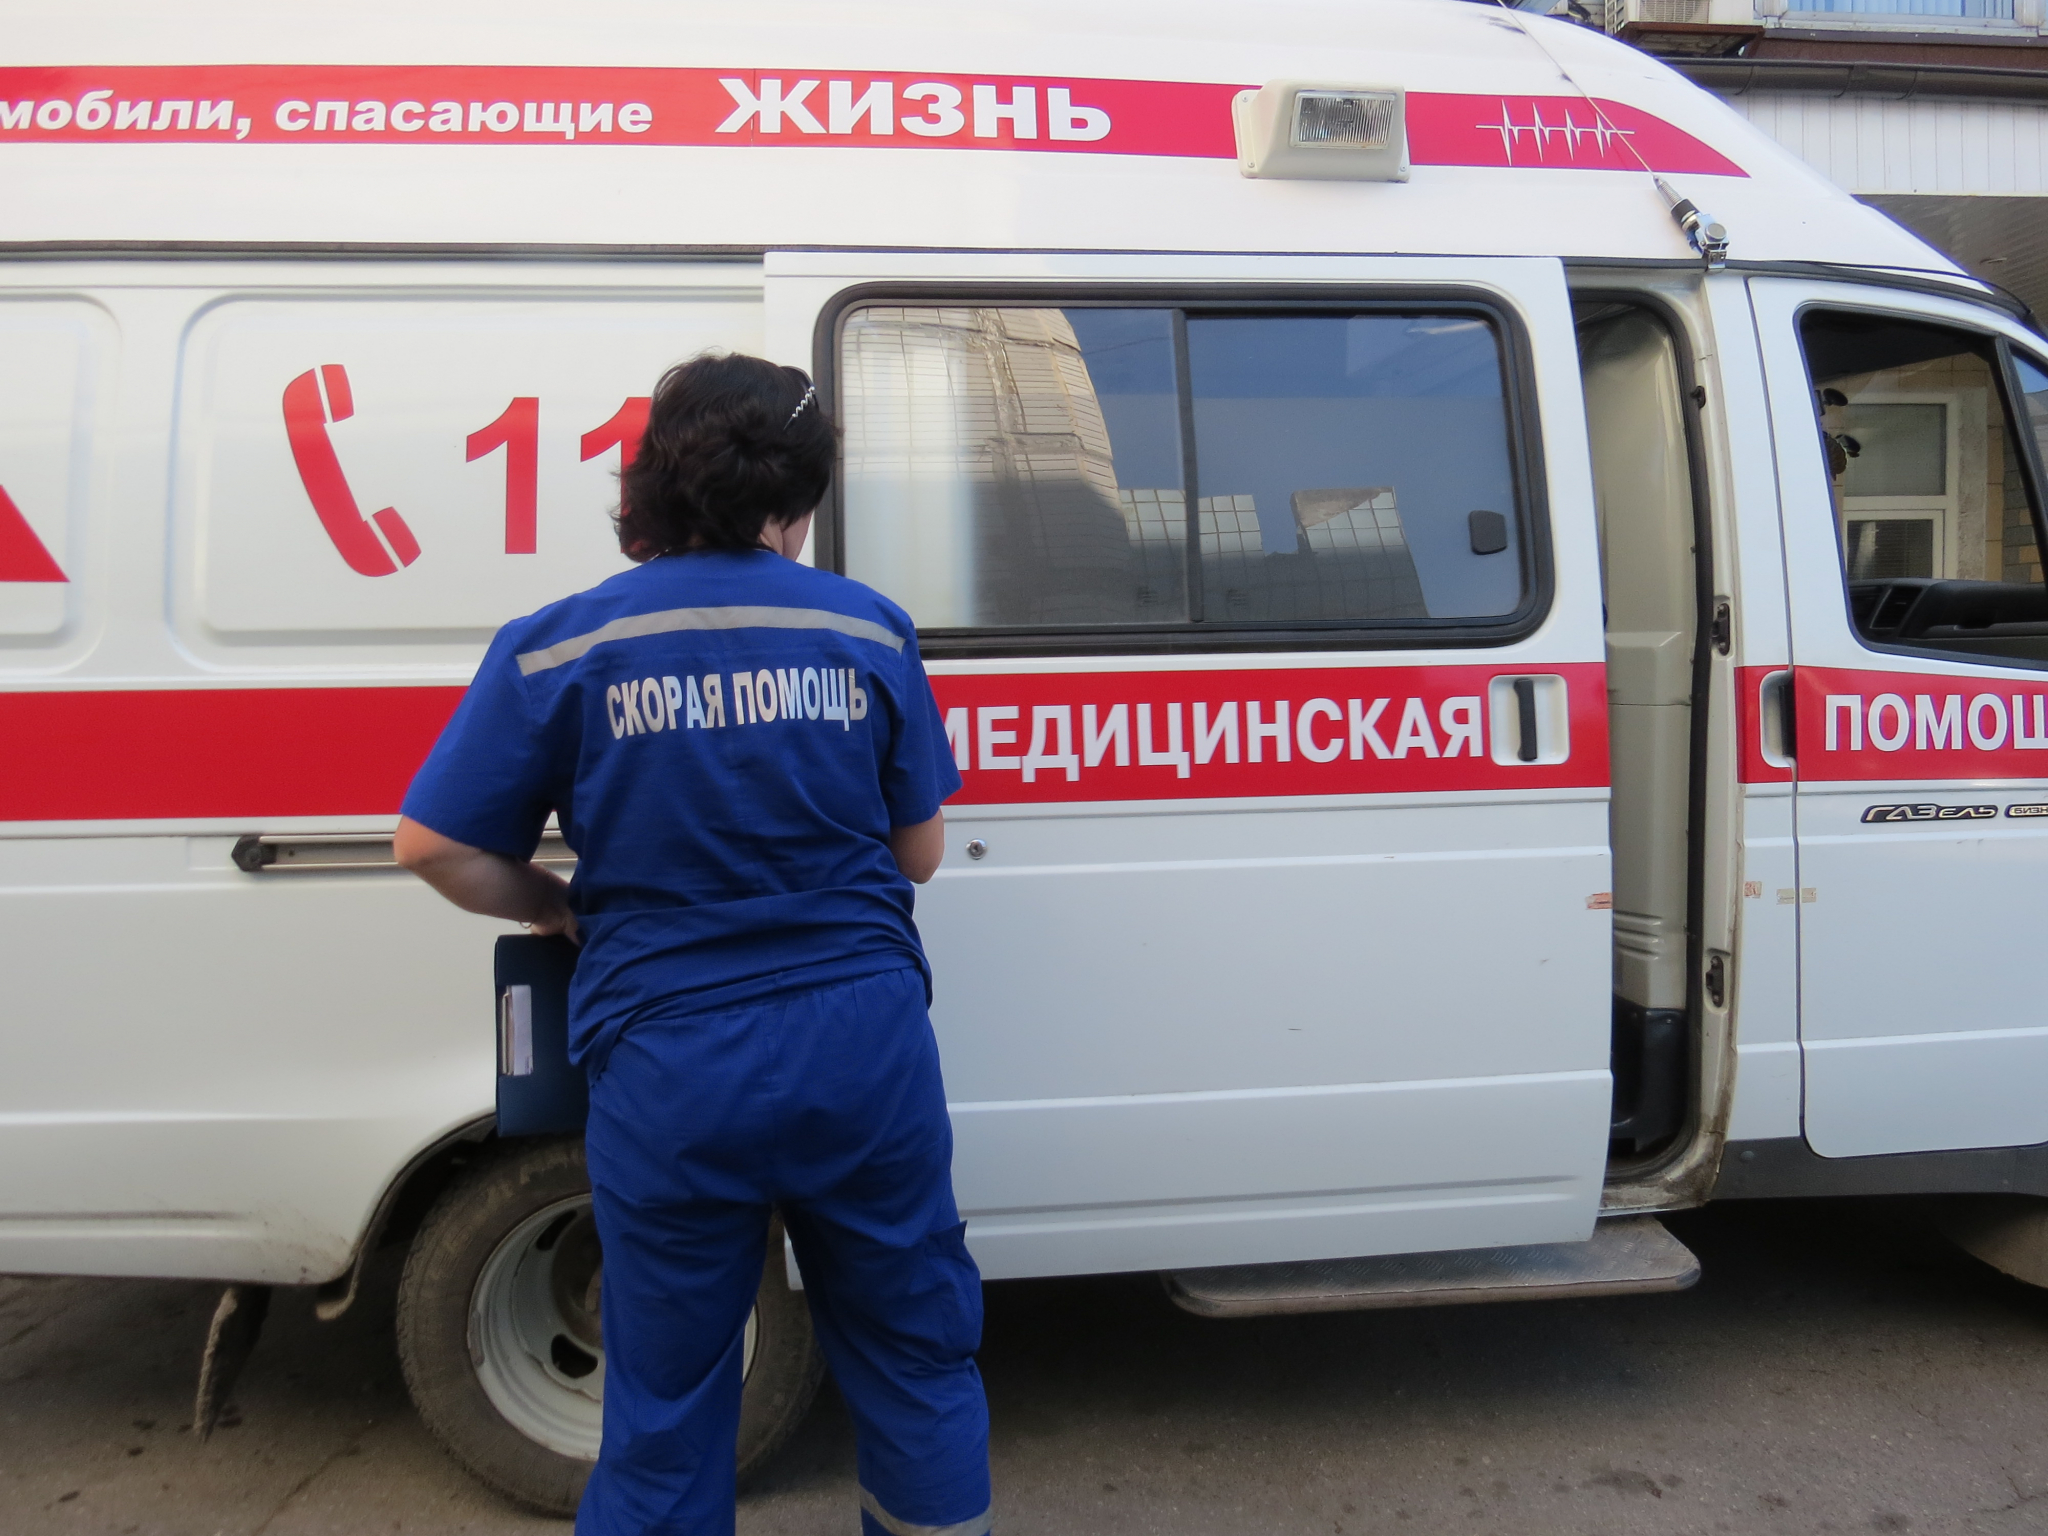 Старшие врачи со скорых в Нижнем Новгороде не получили федеральных выплат